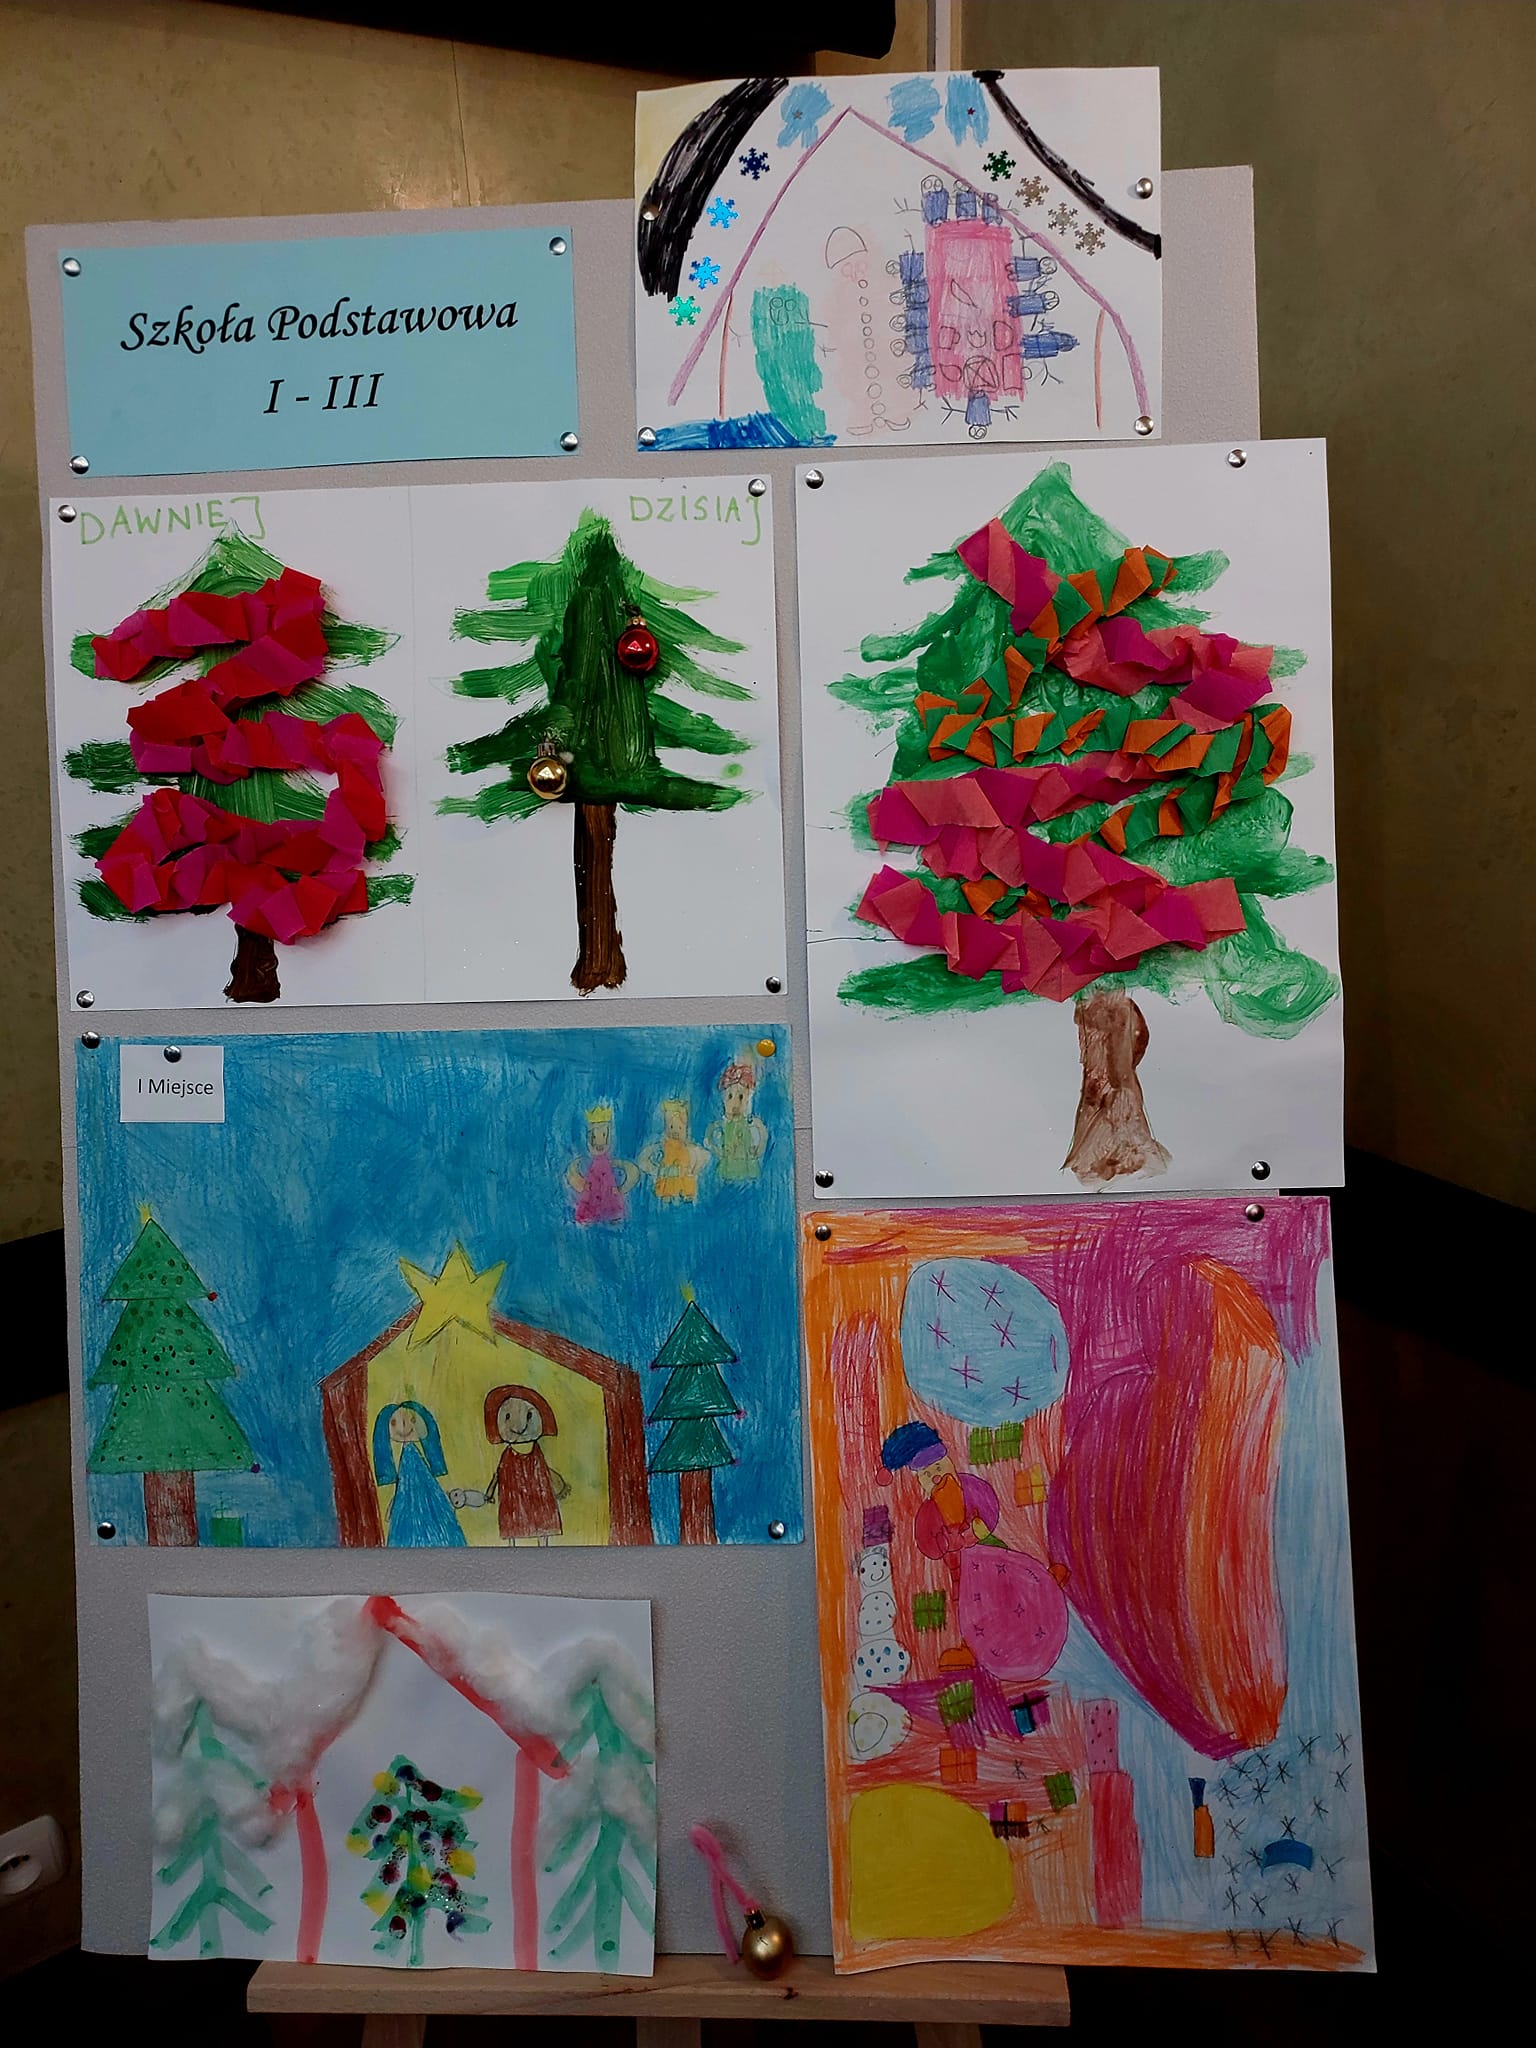   Работы, представленные на мольбертах в начальной школе категории I - III, принимали участие в художественном конкурсе 